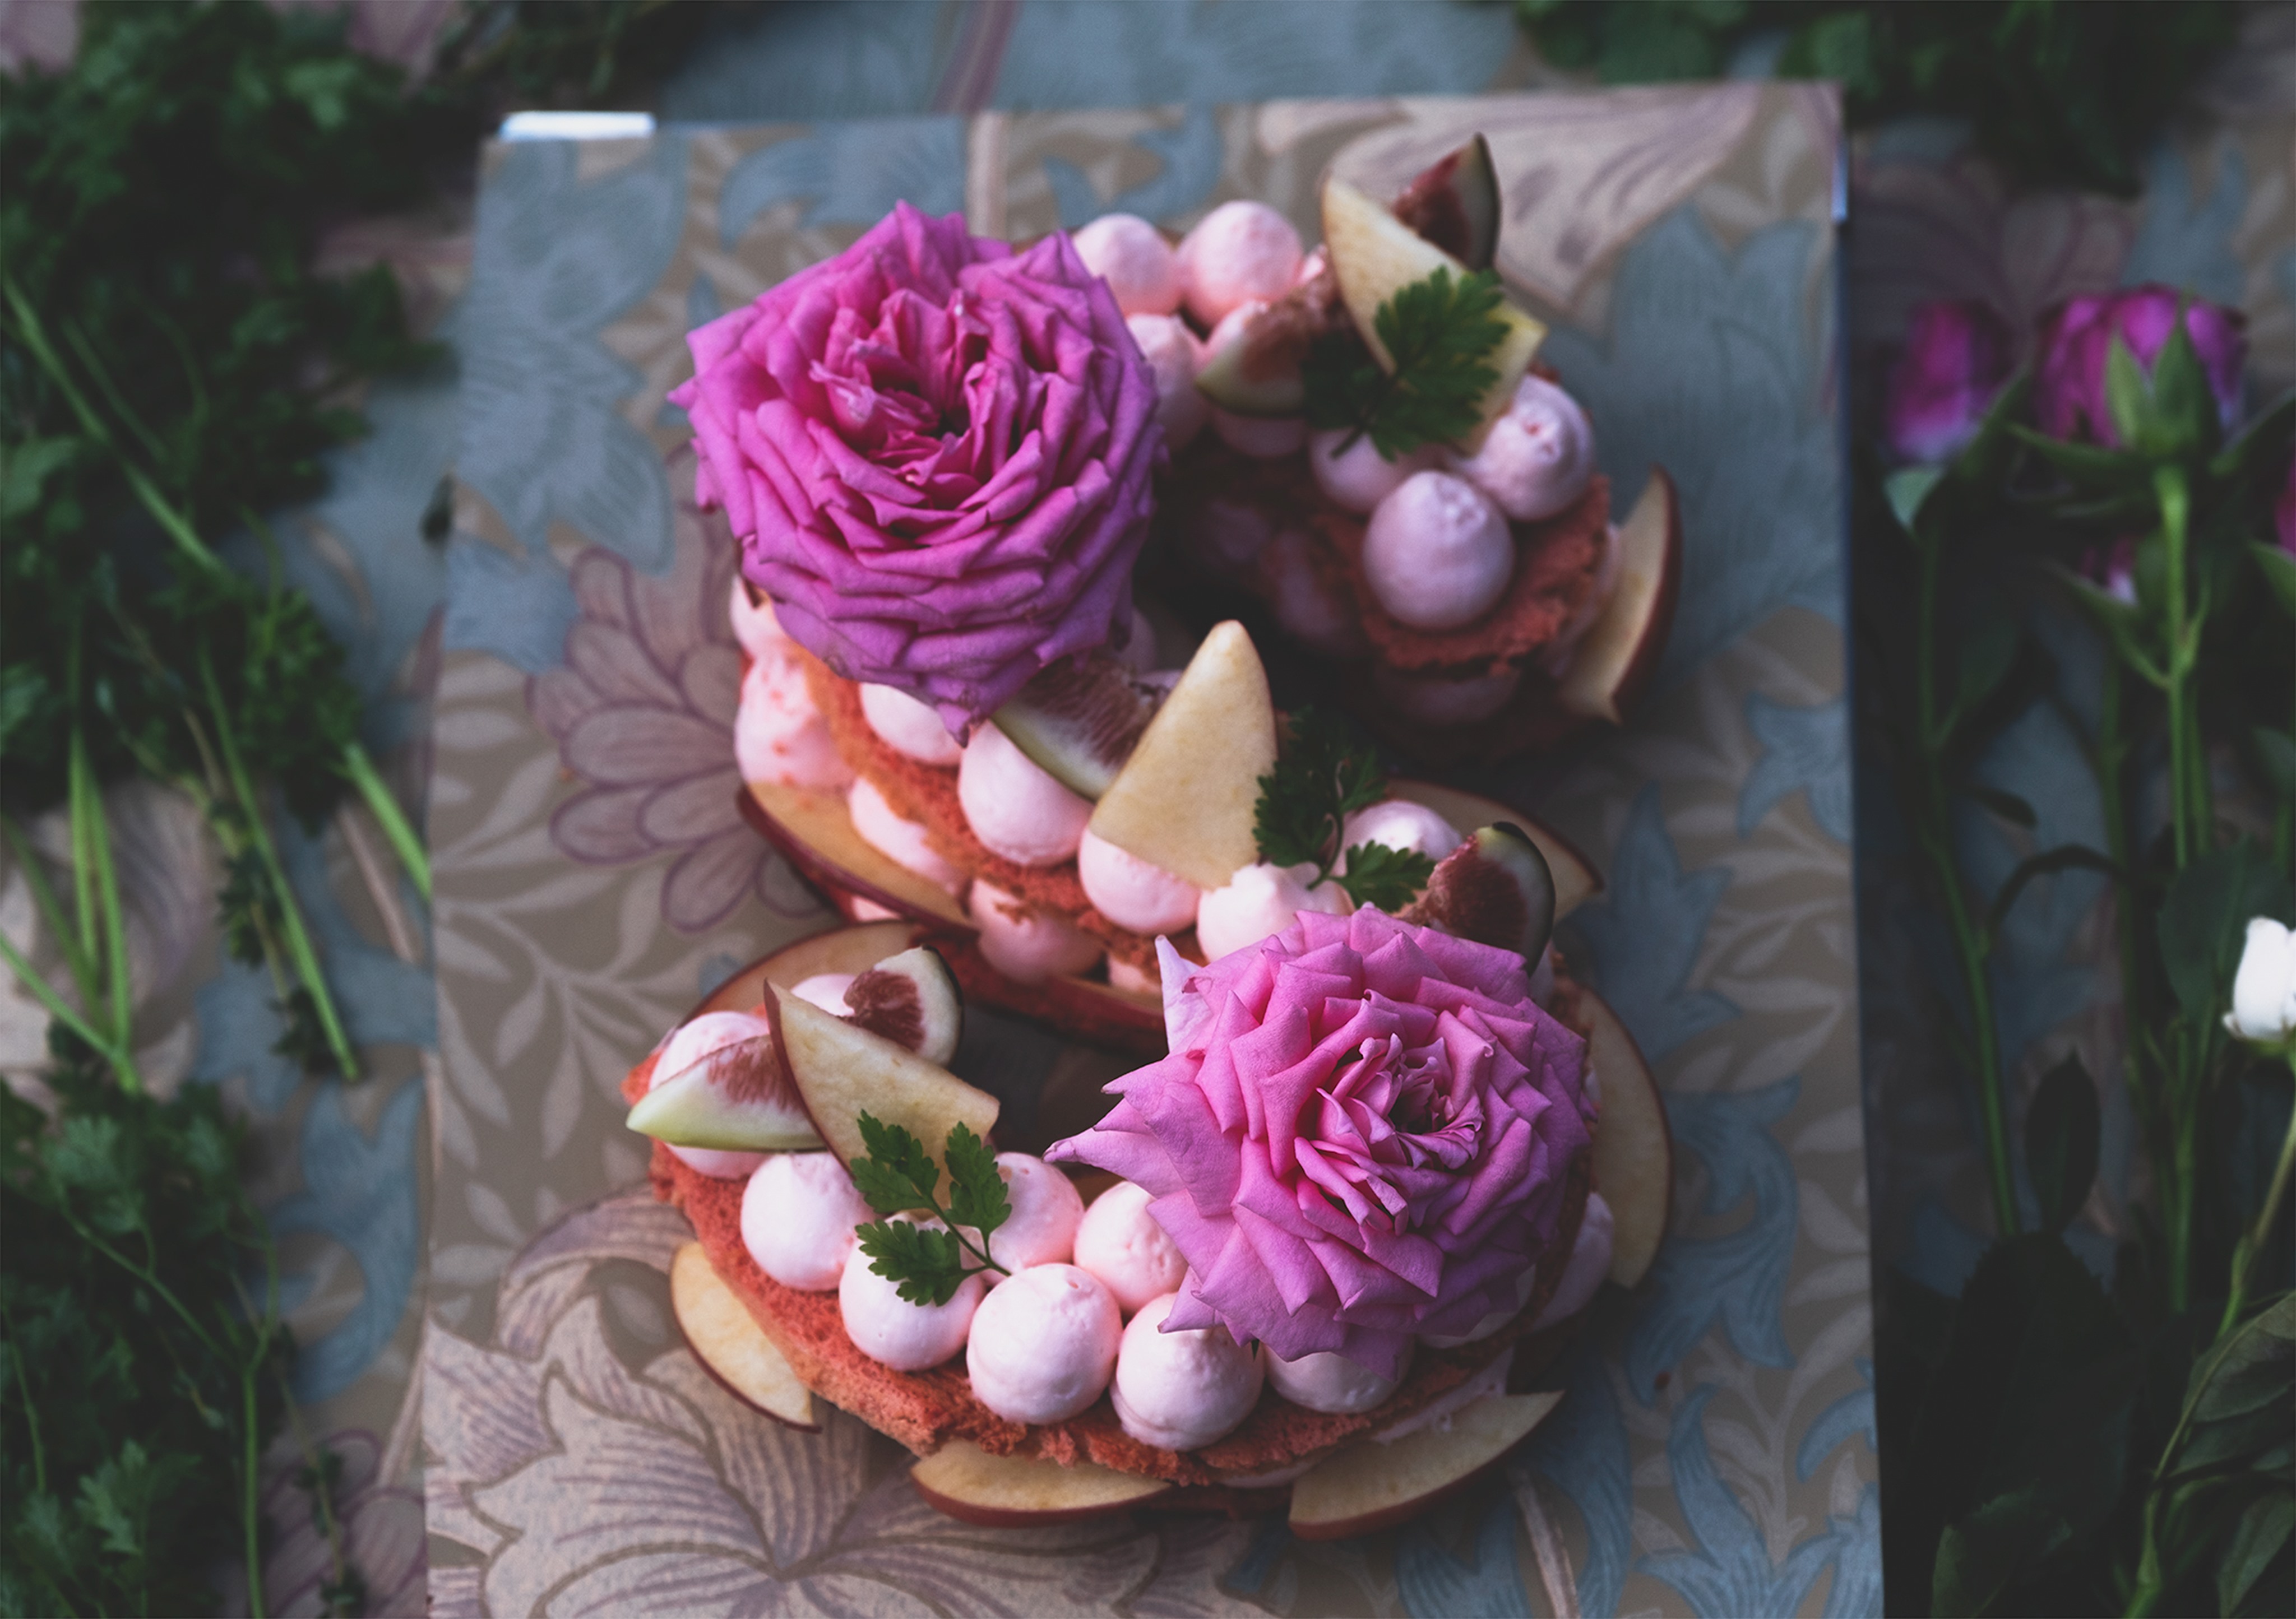 イニシャルケーキに花束を添えたアートのようなギフトflower Lettercake フラワーレターケーキ 食べられる花屋ediblegardenの 食用バラとコラボ開始 Dot Science株式会社のプレスリリース